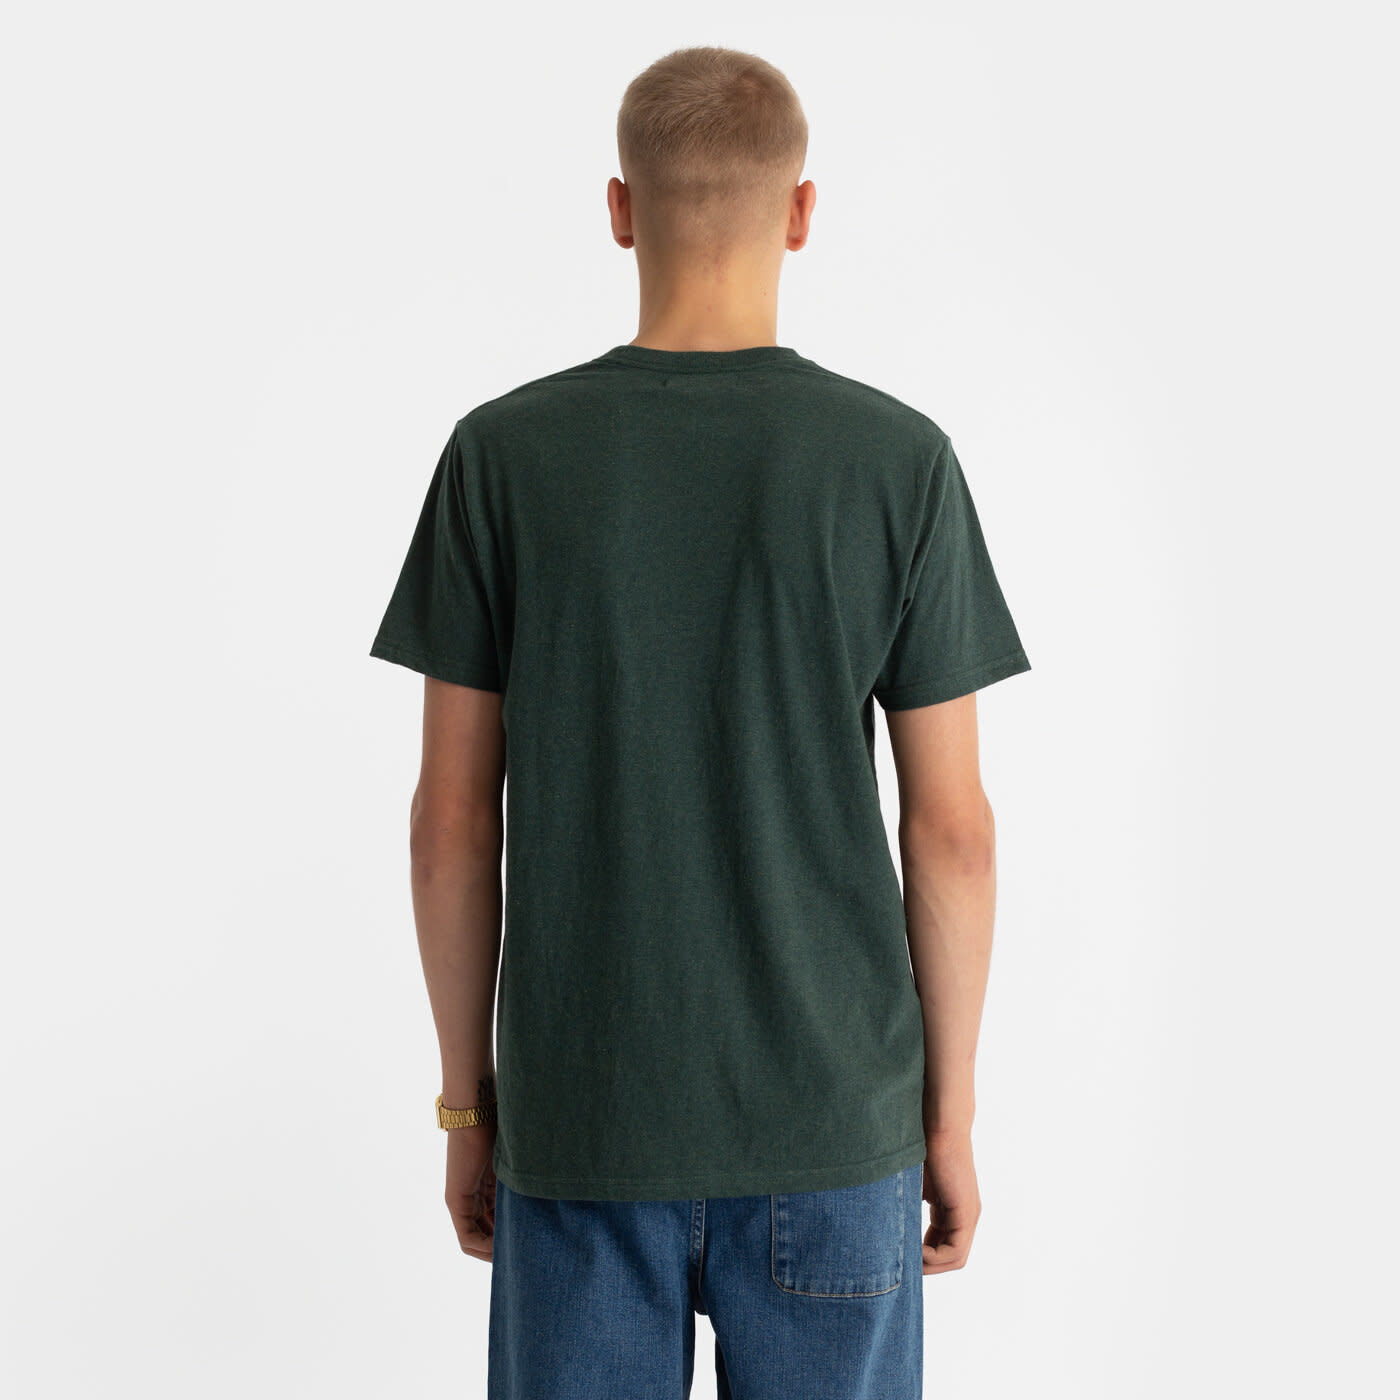 RVLT RVLT, 1051 T-Shirt, darkgren-m, XL